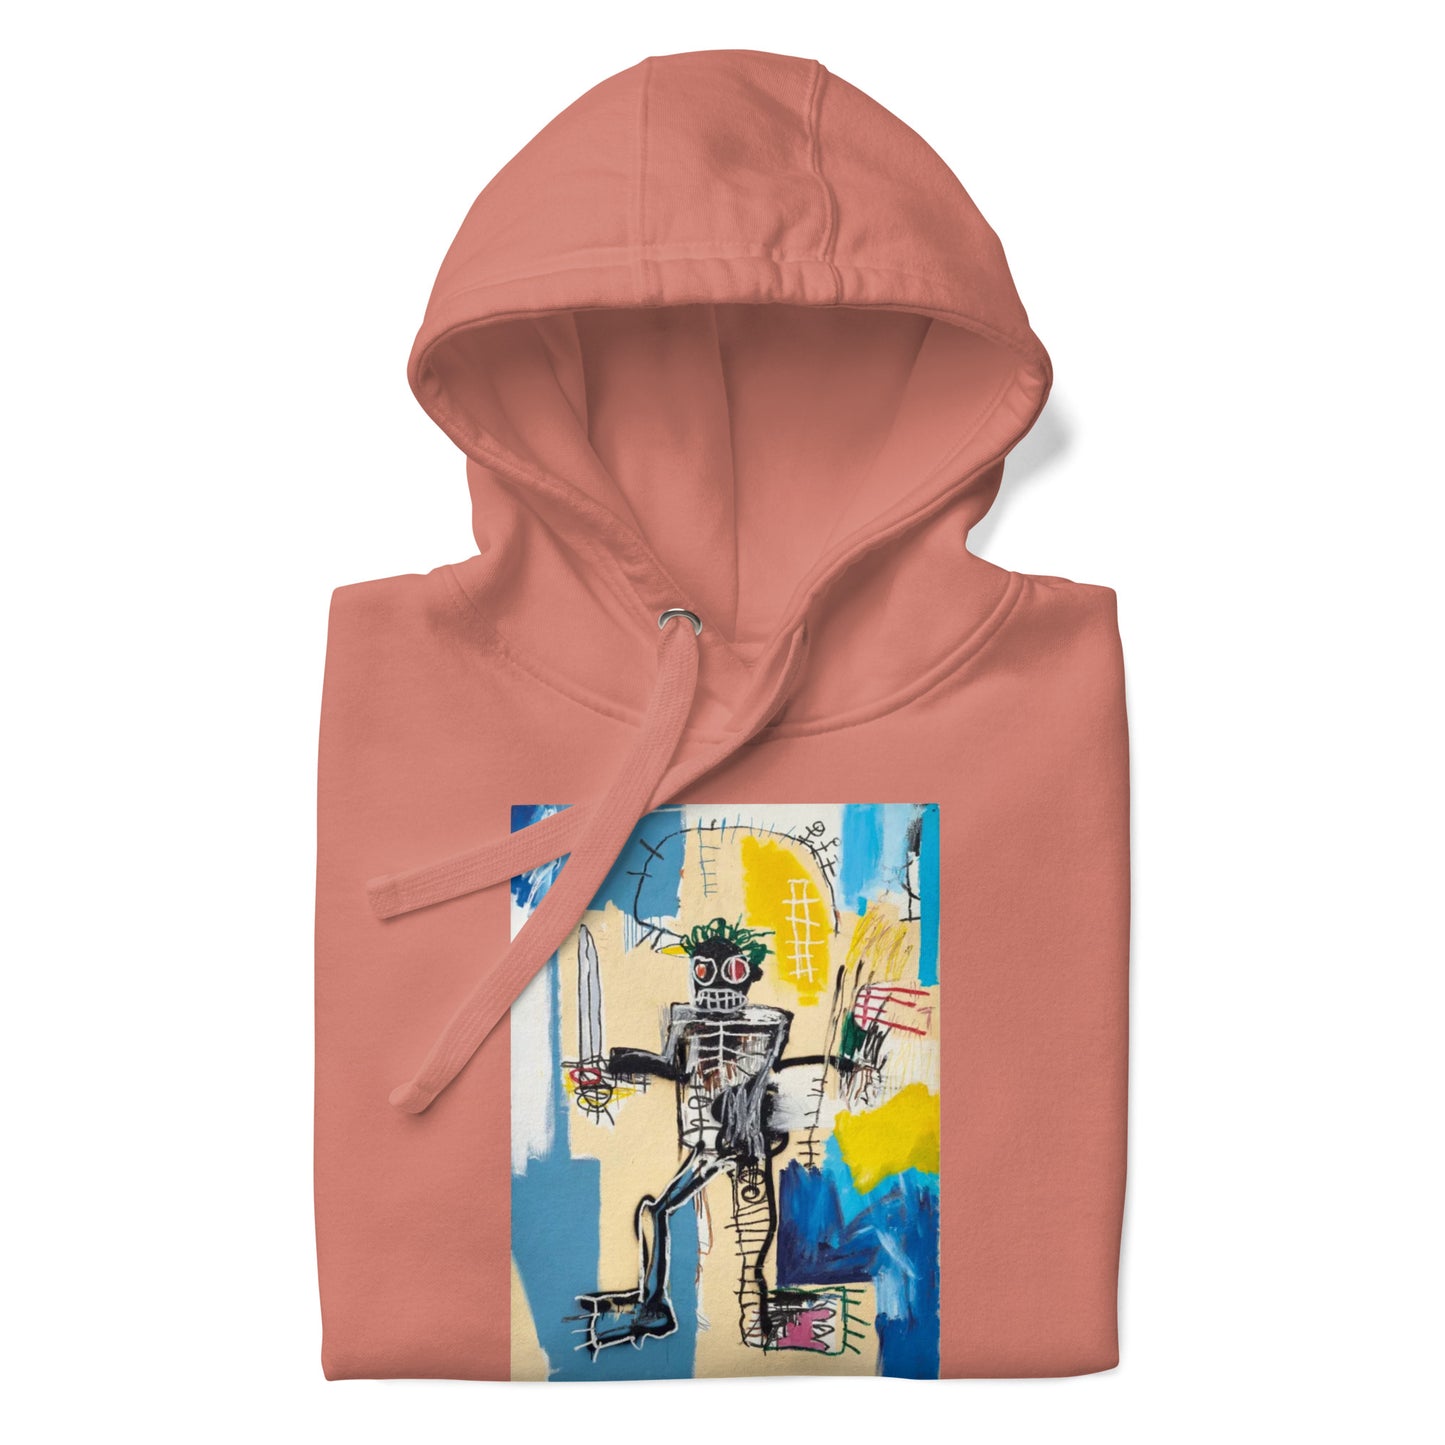 Jean-Michel Basquiat "Warrior" Artwork Printed Premium Streetwear Sweatshirt Hoodie Salmon Pink